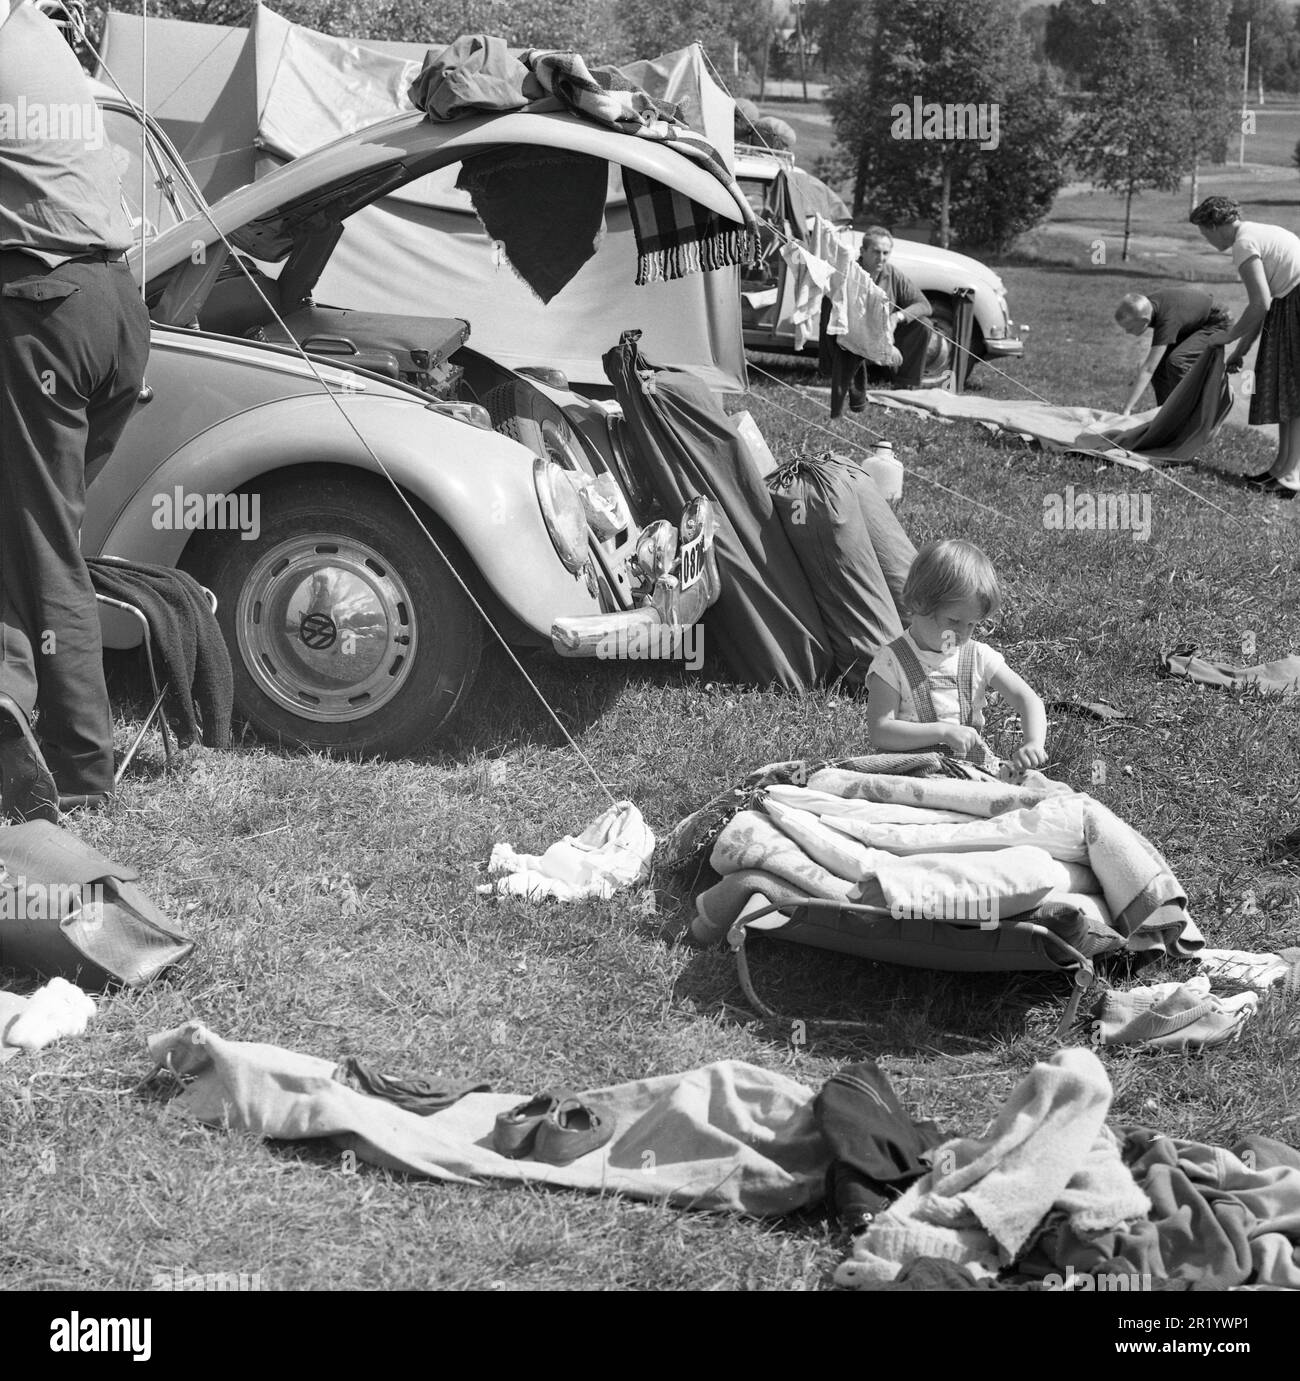 Camping dans le 1960s. Un camping où les familles passent des parties de leurs vacances d'été. Leurs voitures sont vues en arrière-plan avec le matériel de camping transporté sur le porte-bagages de toit. Värmland Suède 1962. Réf. BV99-2 Banque D'Images